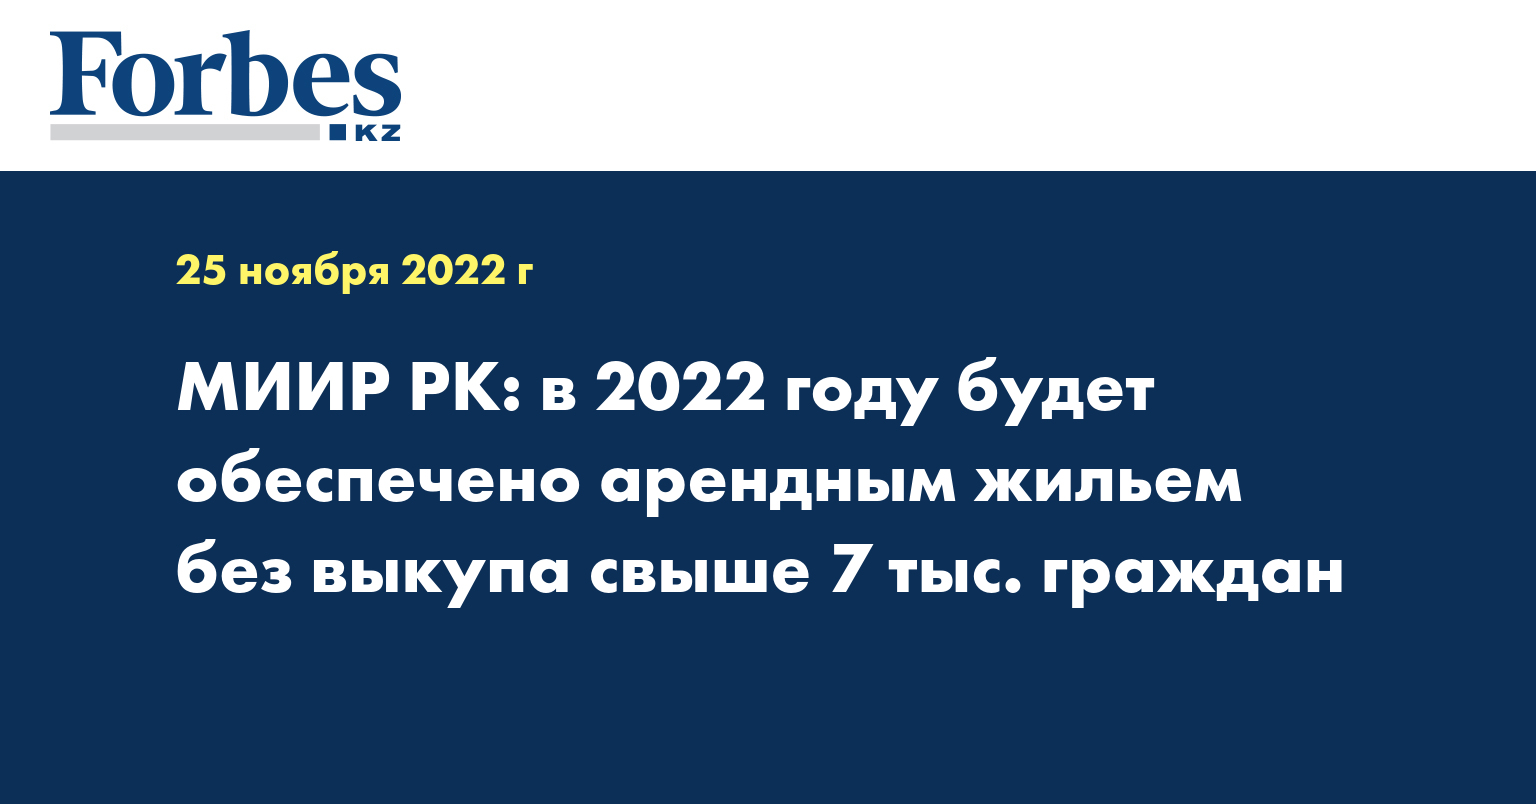 МИИР РК: в 2022 году будет обеспечено арендным жильем без выкупа свыше 7 тыс. граждан